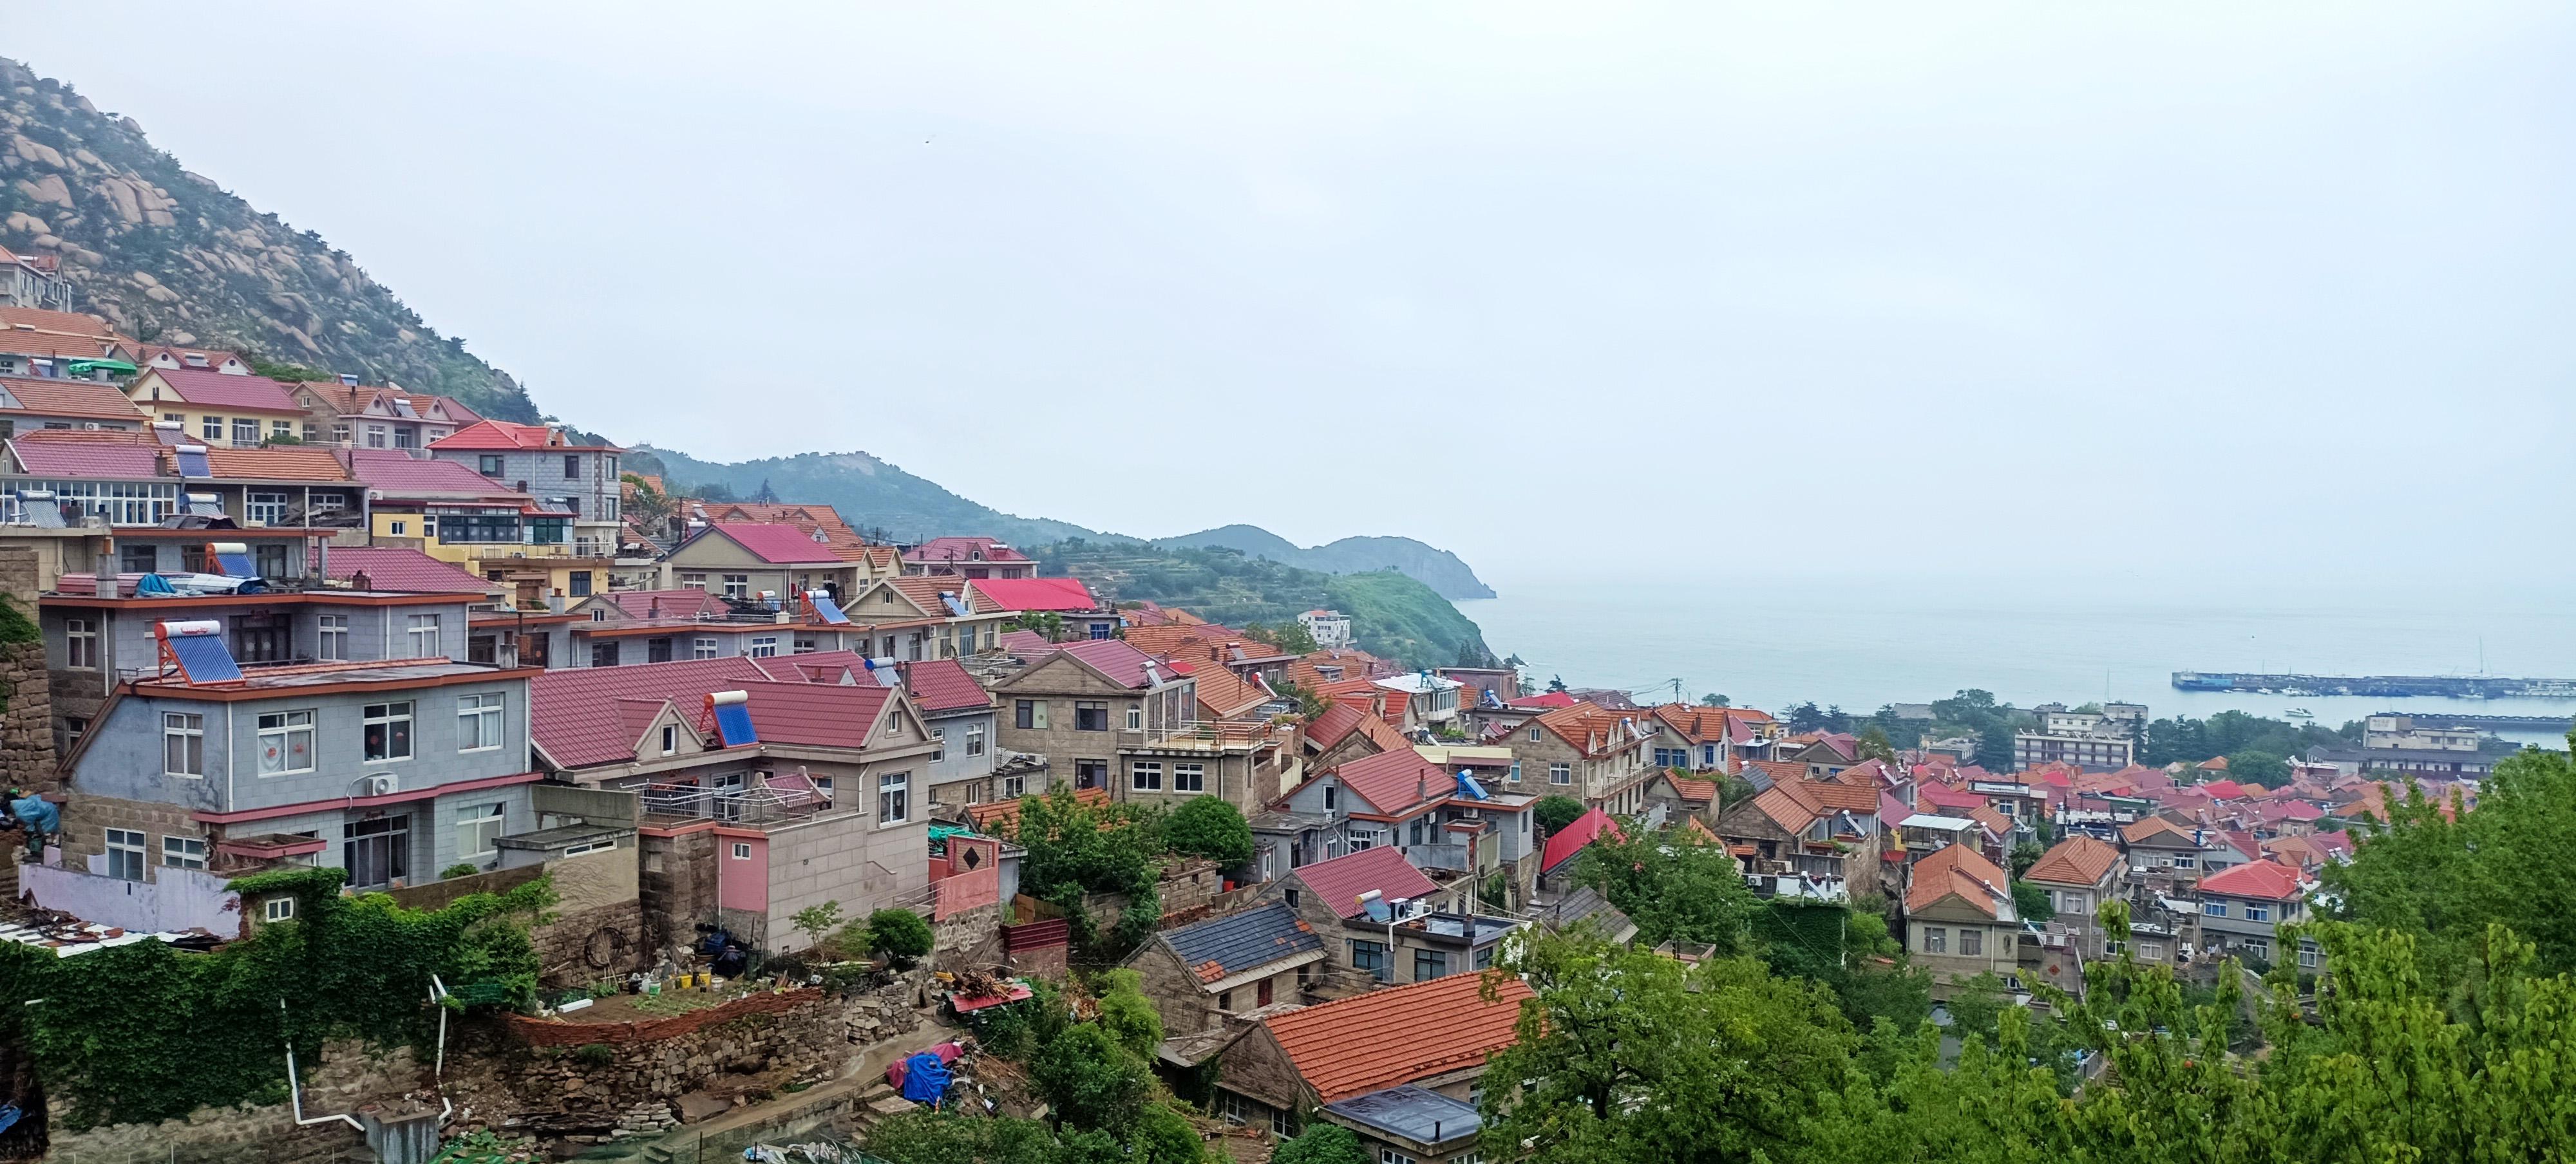 中国最美渔村青山村图片